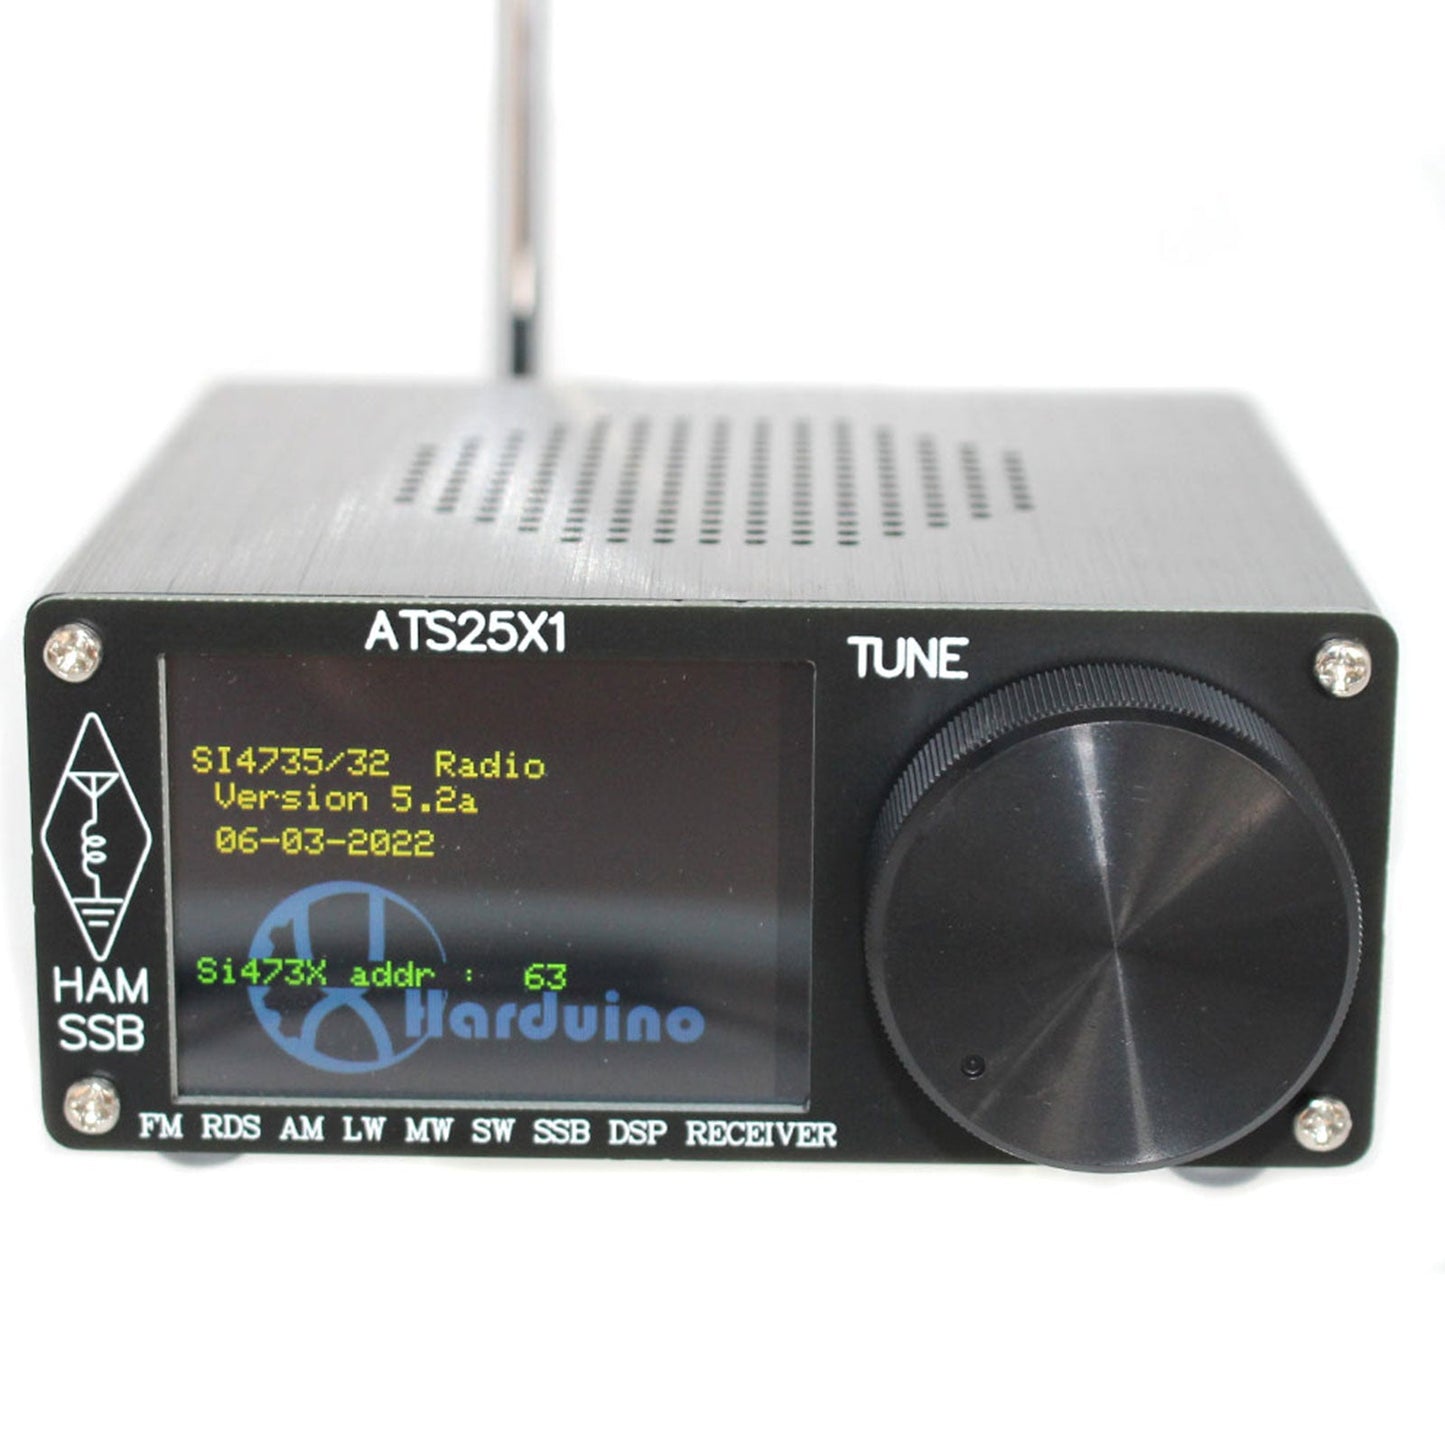 Ricevitore radio originale ATS-25X1 All Band DSP FM LW MW SW con touch screen da 2,4 "